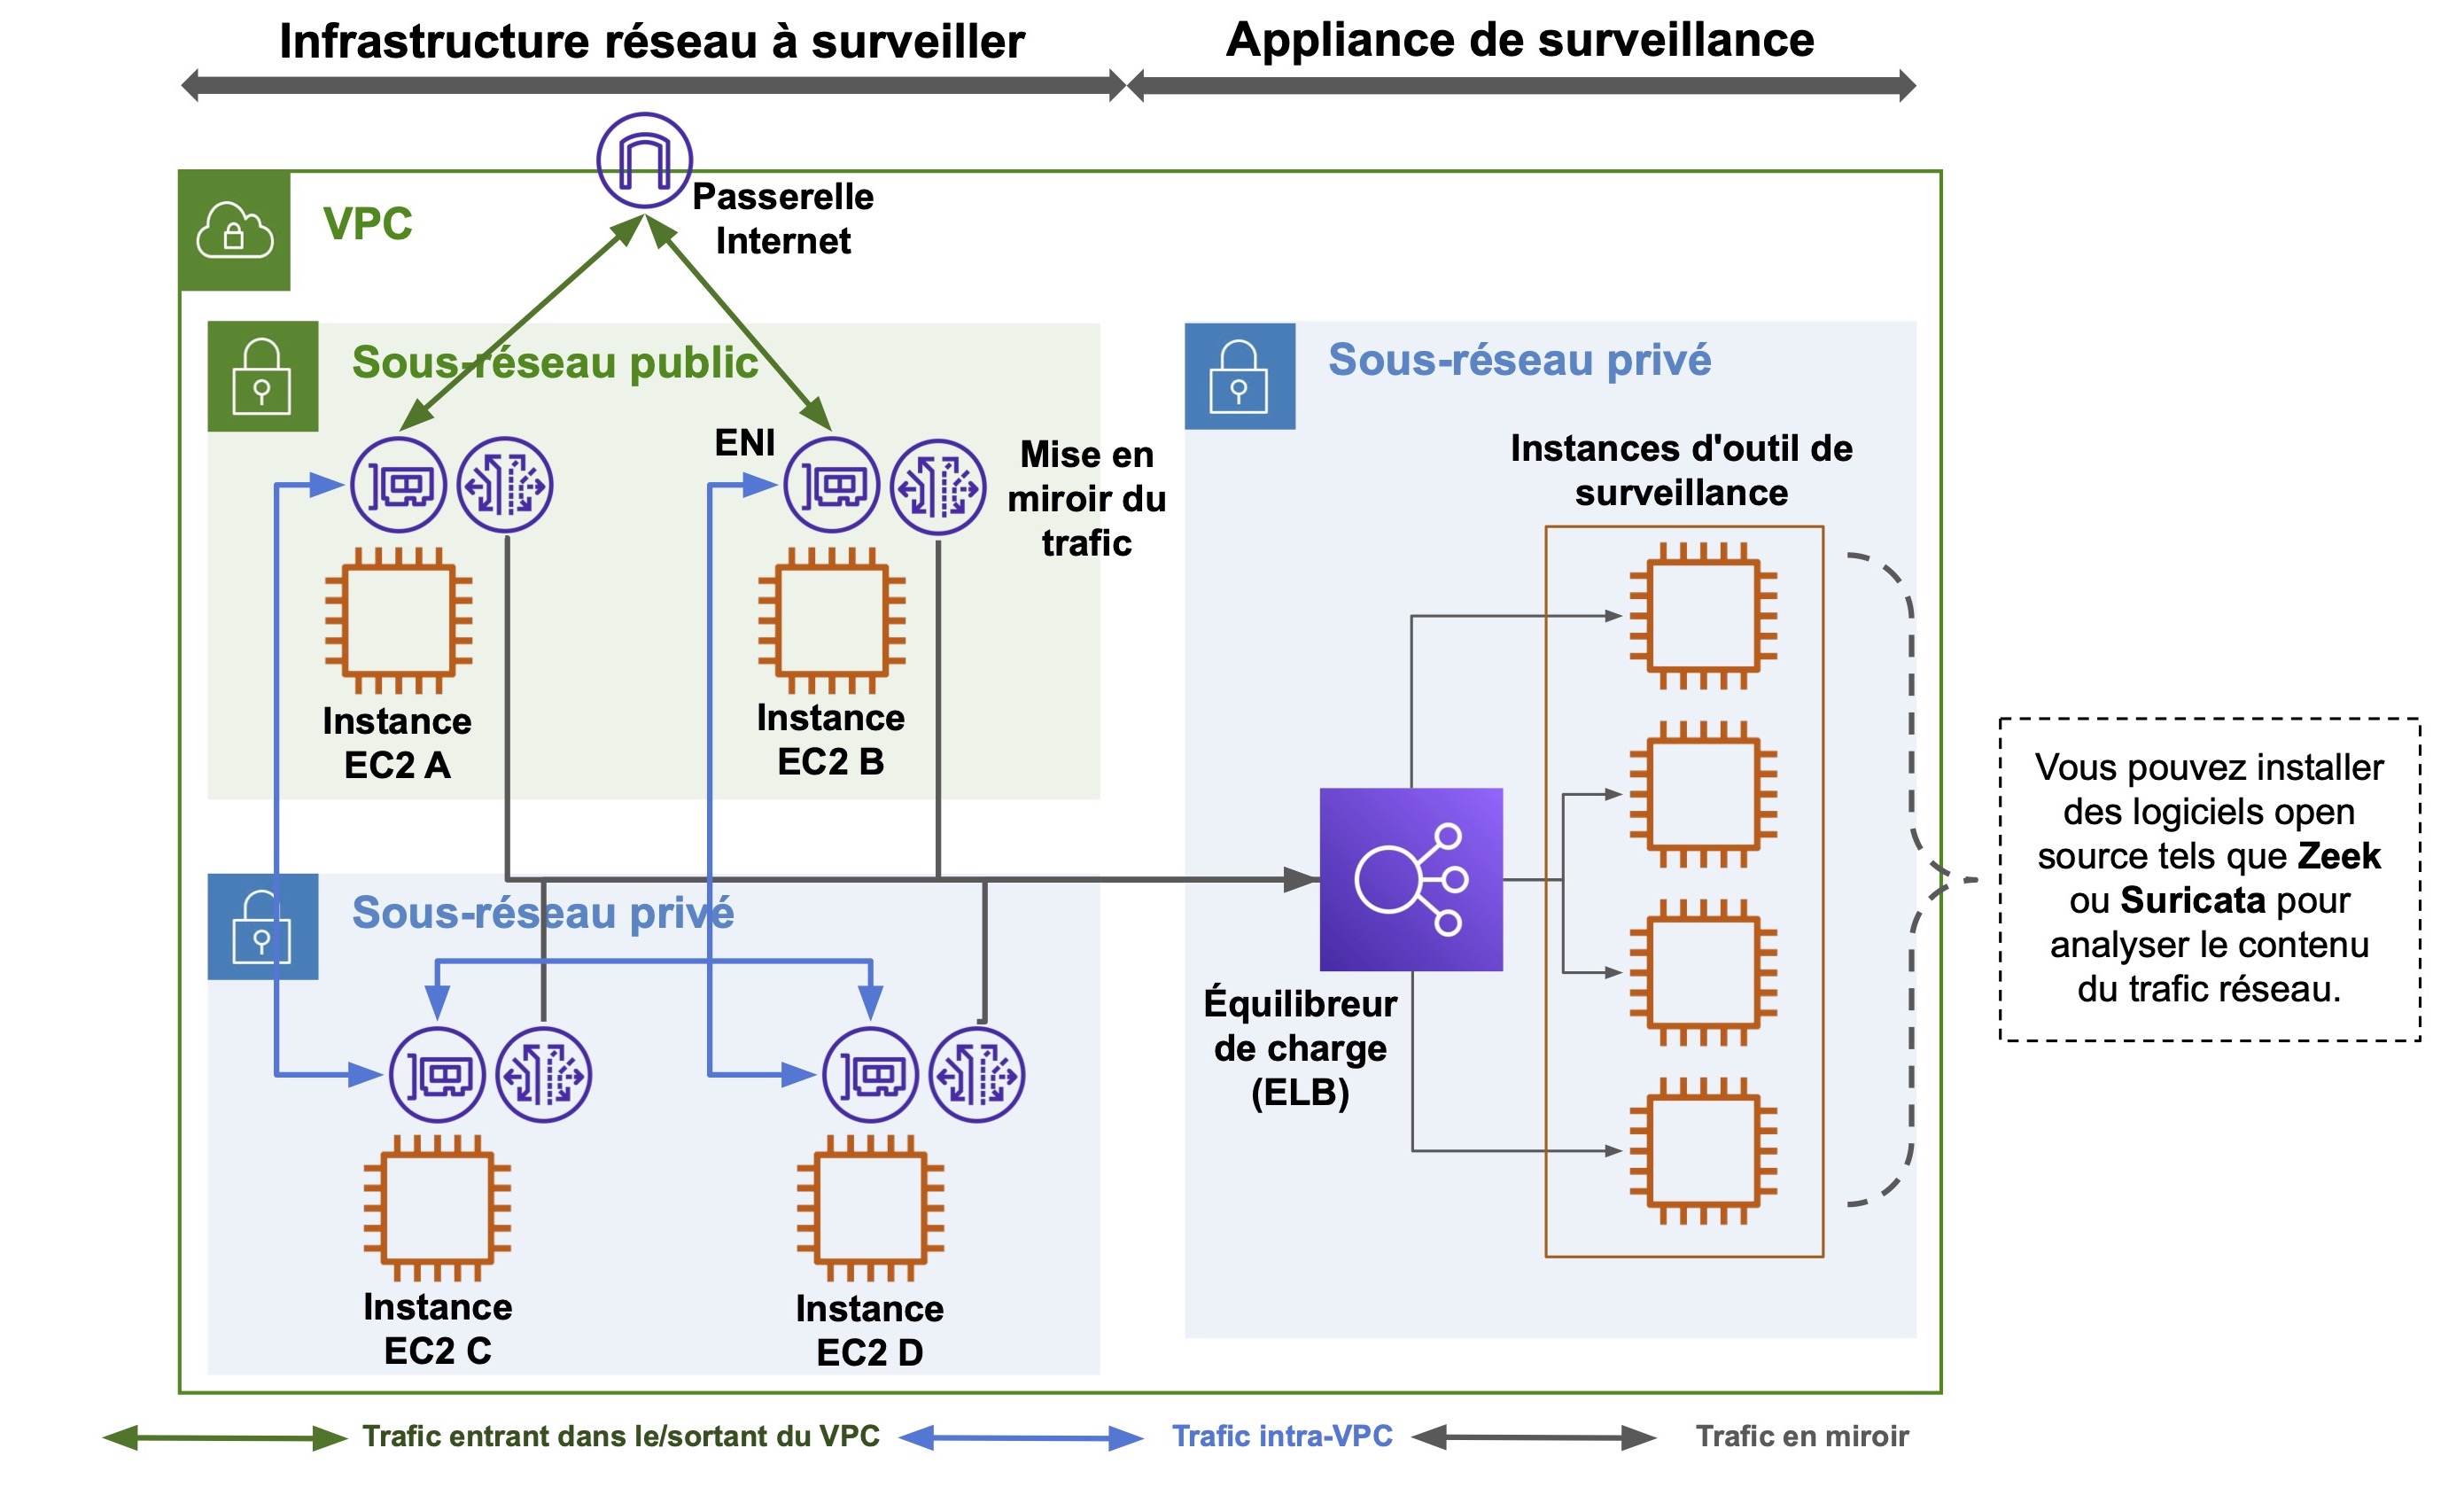 Schéma de l'infrastructure réseau à surveiller et l'appliance de surveillance